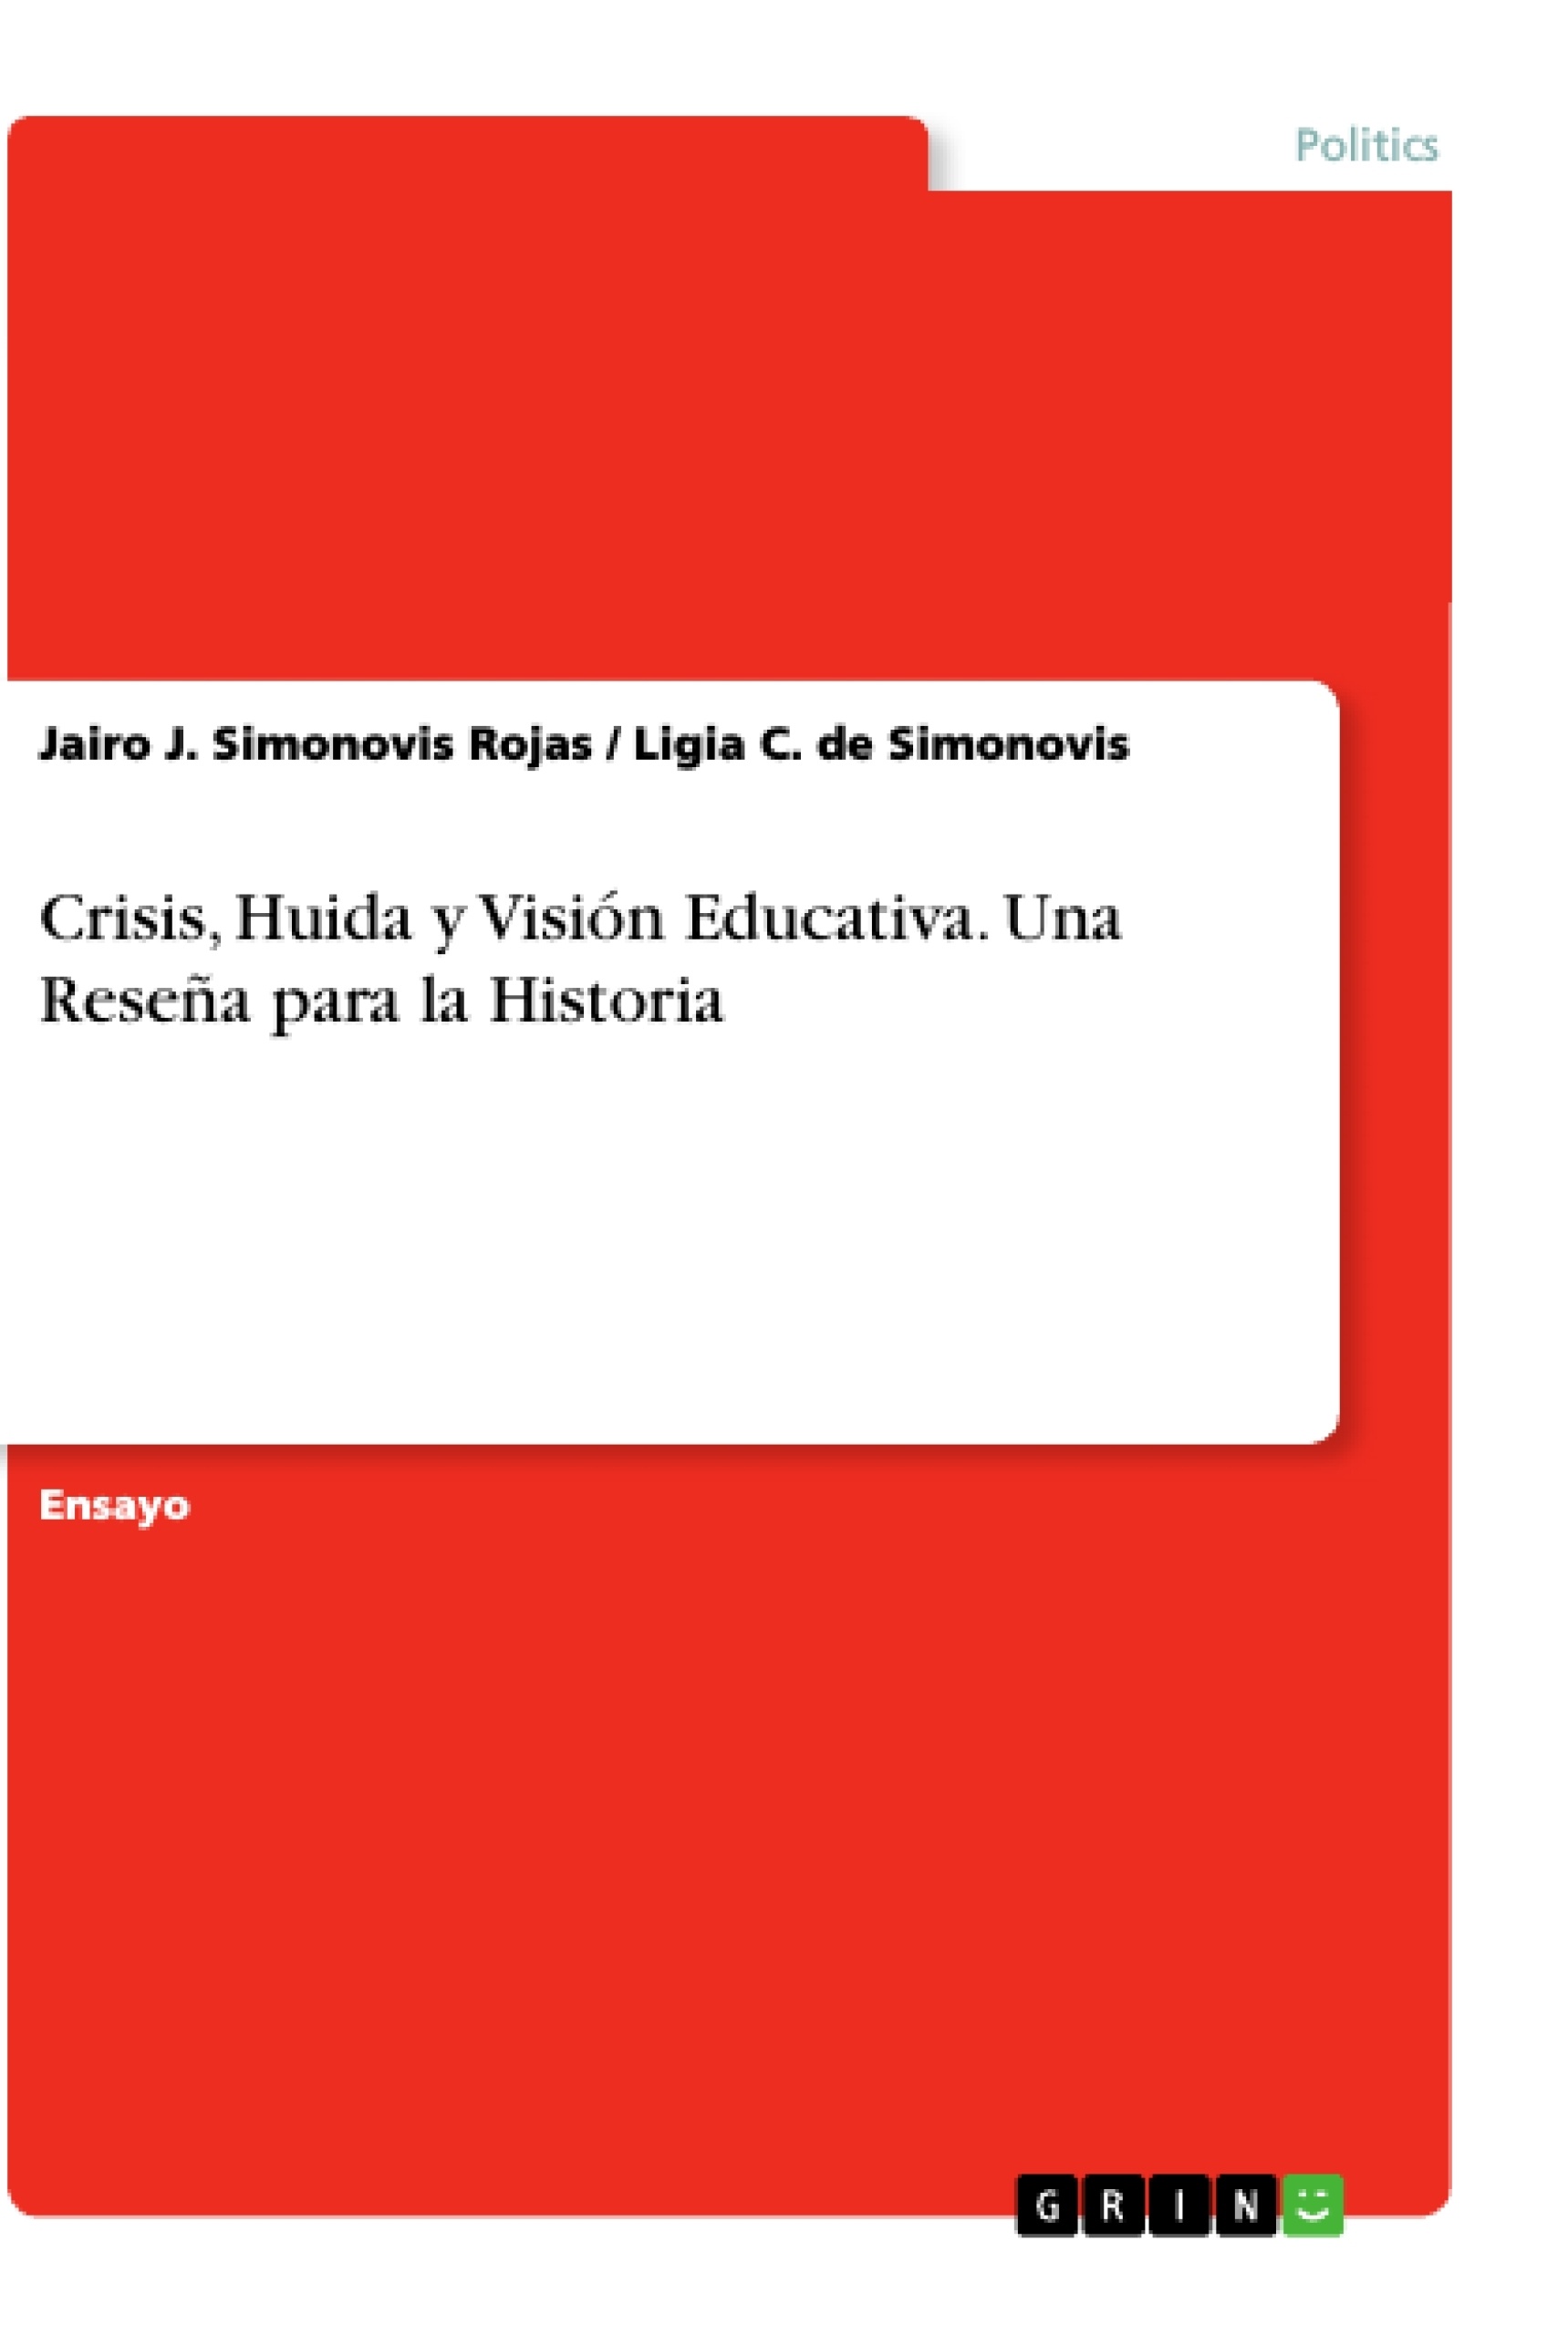 Título: Crisis, Huida y Visión Educativa. Una Reseña para la Historia